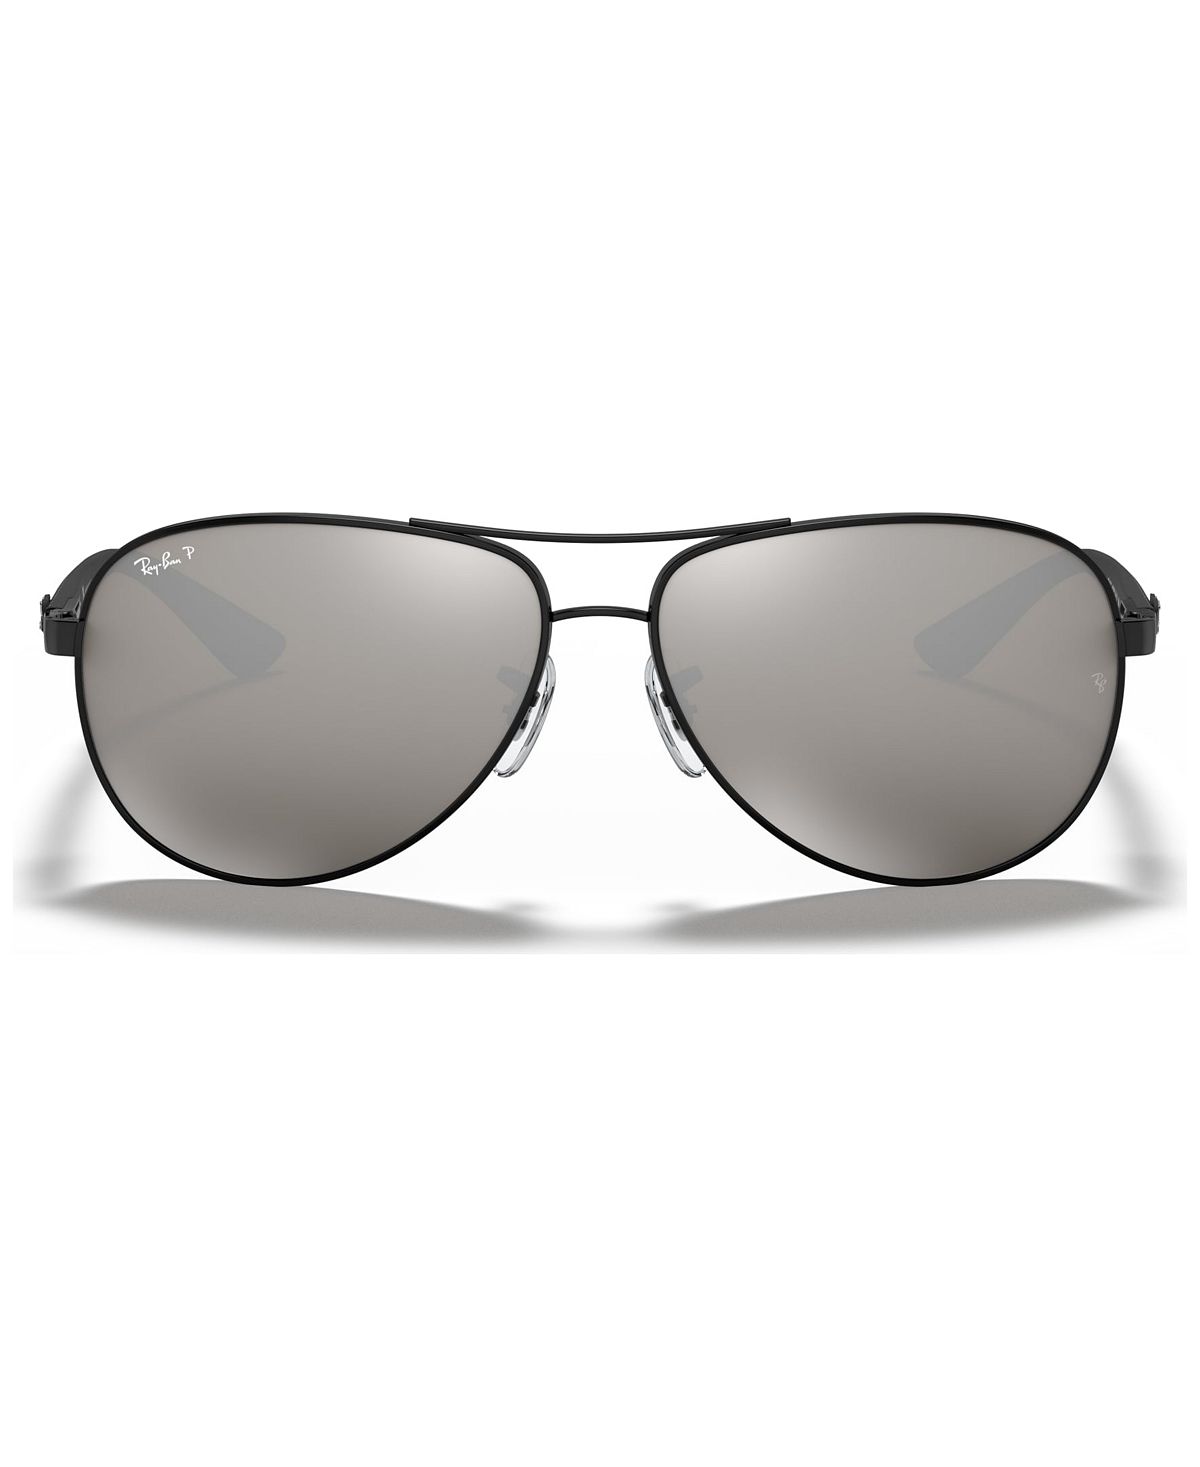 солнцезащитные очки ray ban rb8313 002 k7 61 13 серый Поляризованные солнцезащитные очки, RB8313 Ray-Ban